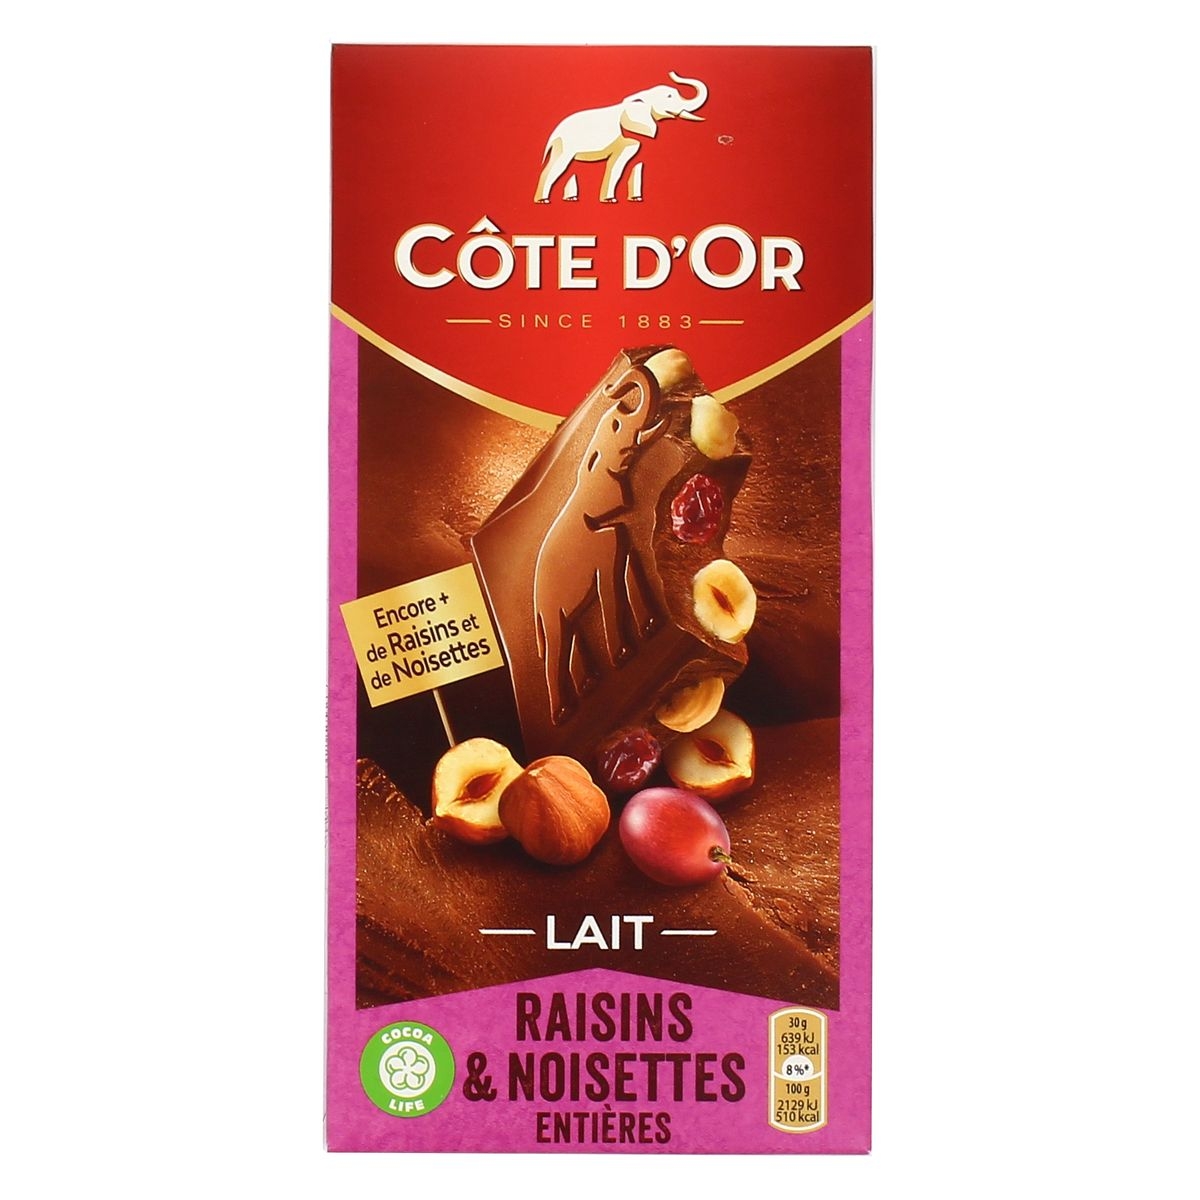 Bloc chocolat au lait, raisins & noisettes entières – Belgian milk chocolate with raisins & hazelnuts – Côte d’Or, 180g – Chanteroy – Le Vacherin Deli